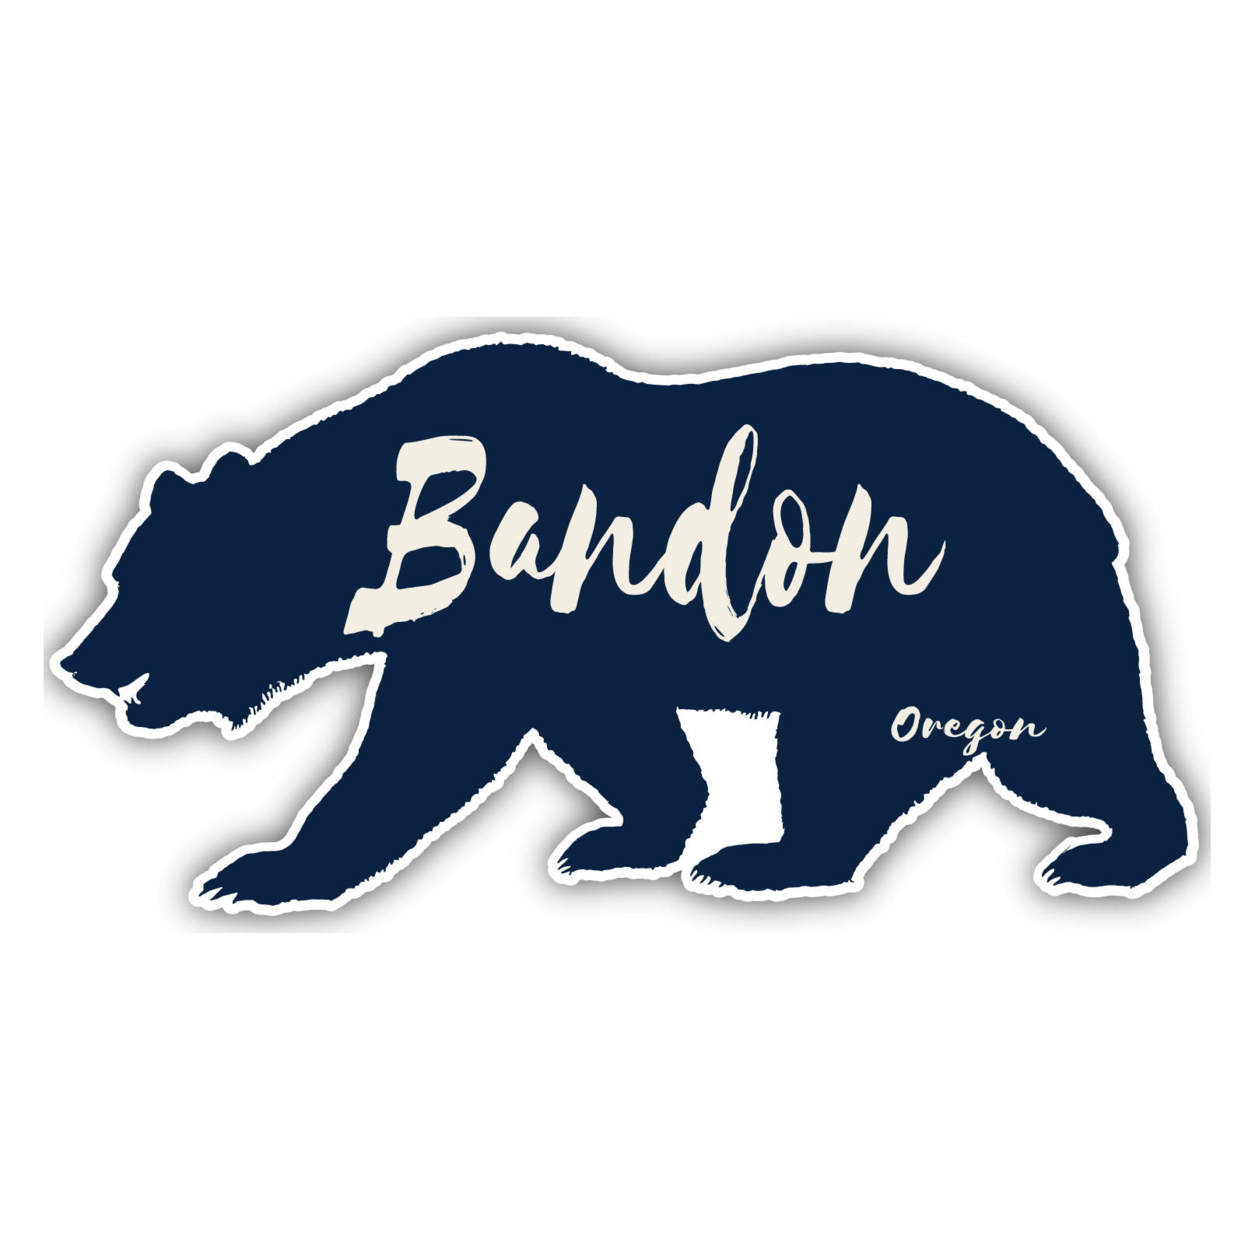 Bandon Oregon Souvenir Decorative Stickers (Choose Theme And Size) - Single Unit, 8-Inch, Tent